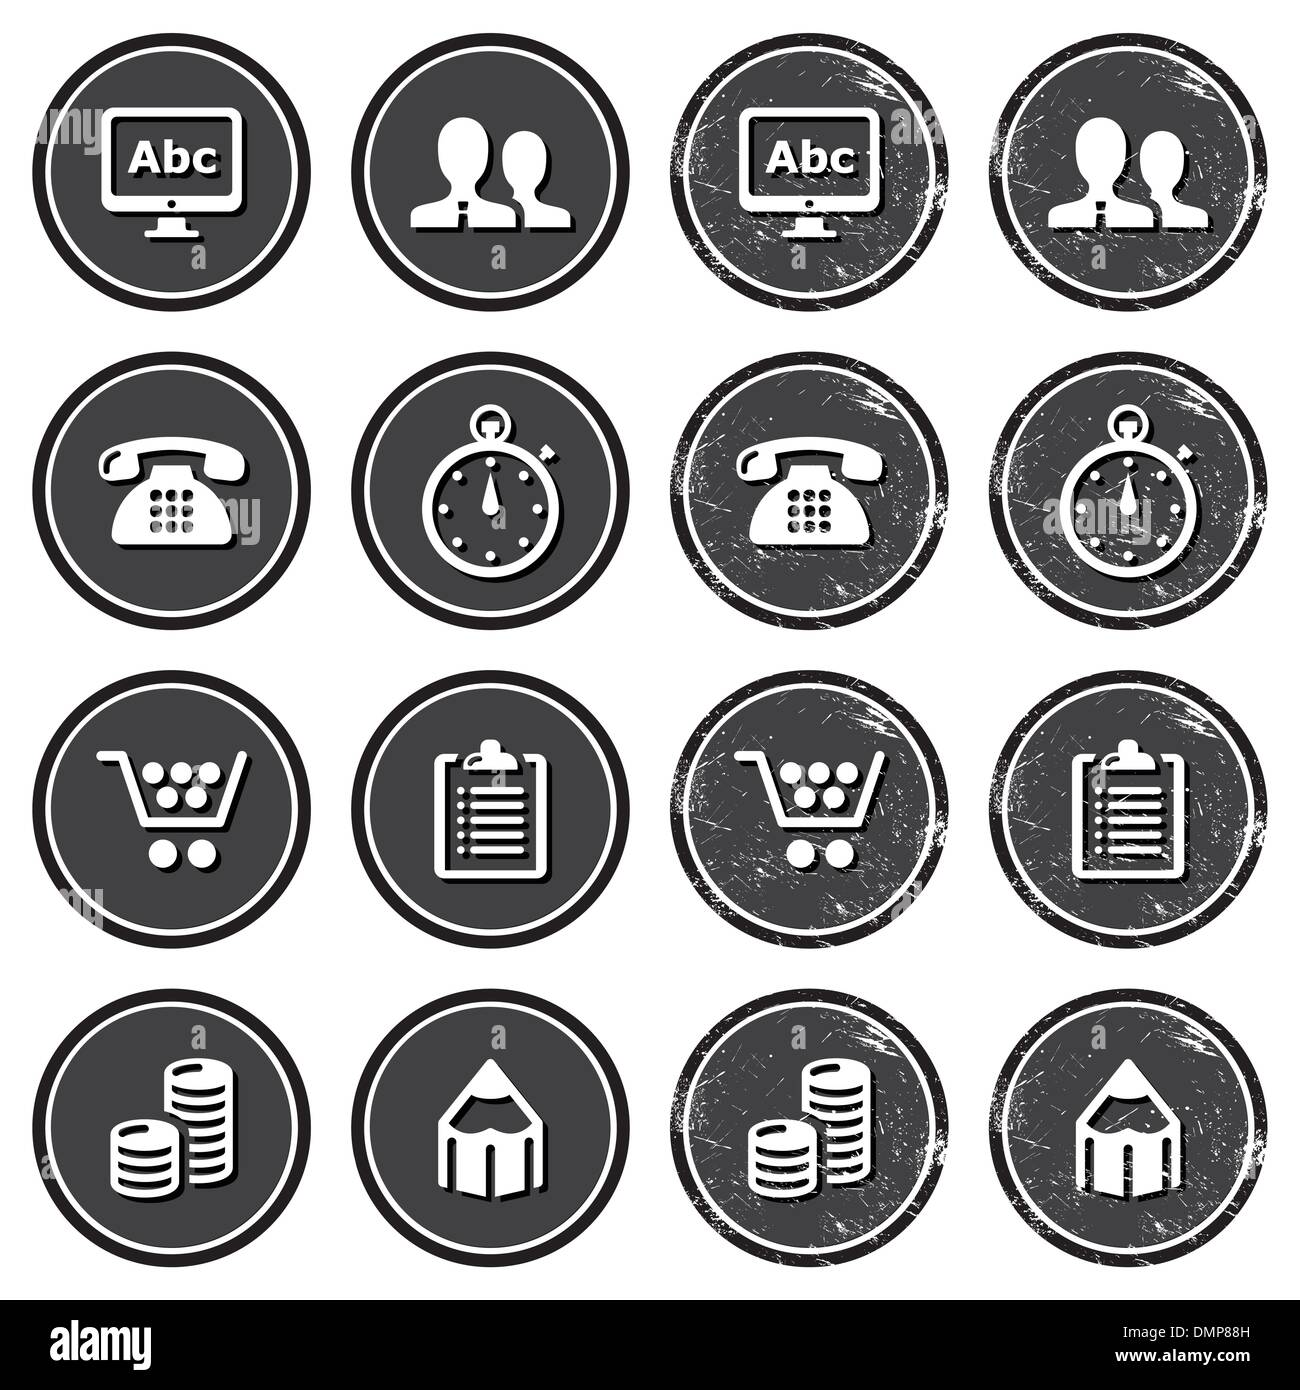 La navigazione del sito icone sul retro set di etichette Illustrazione Vettoriale